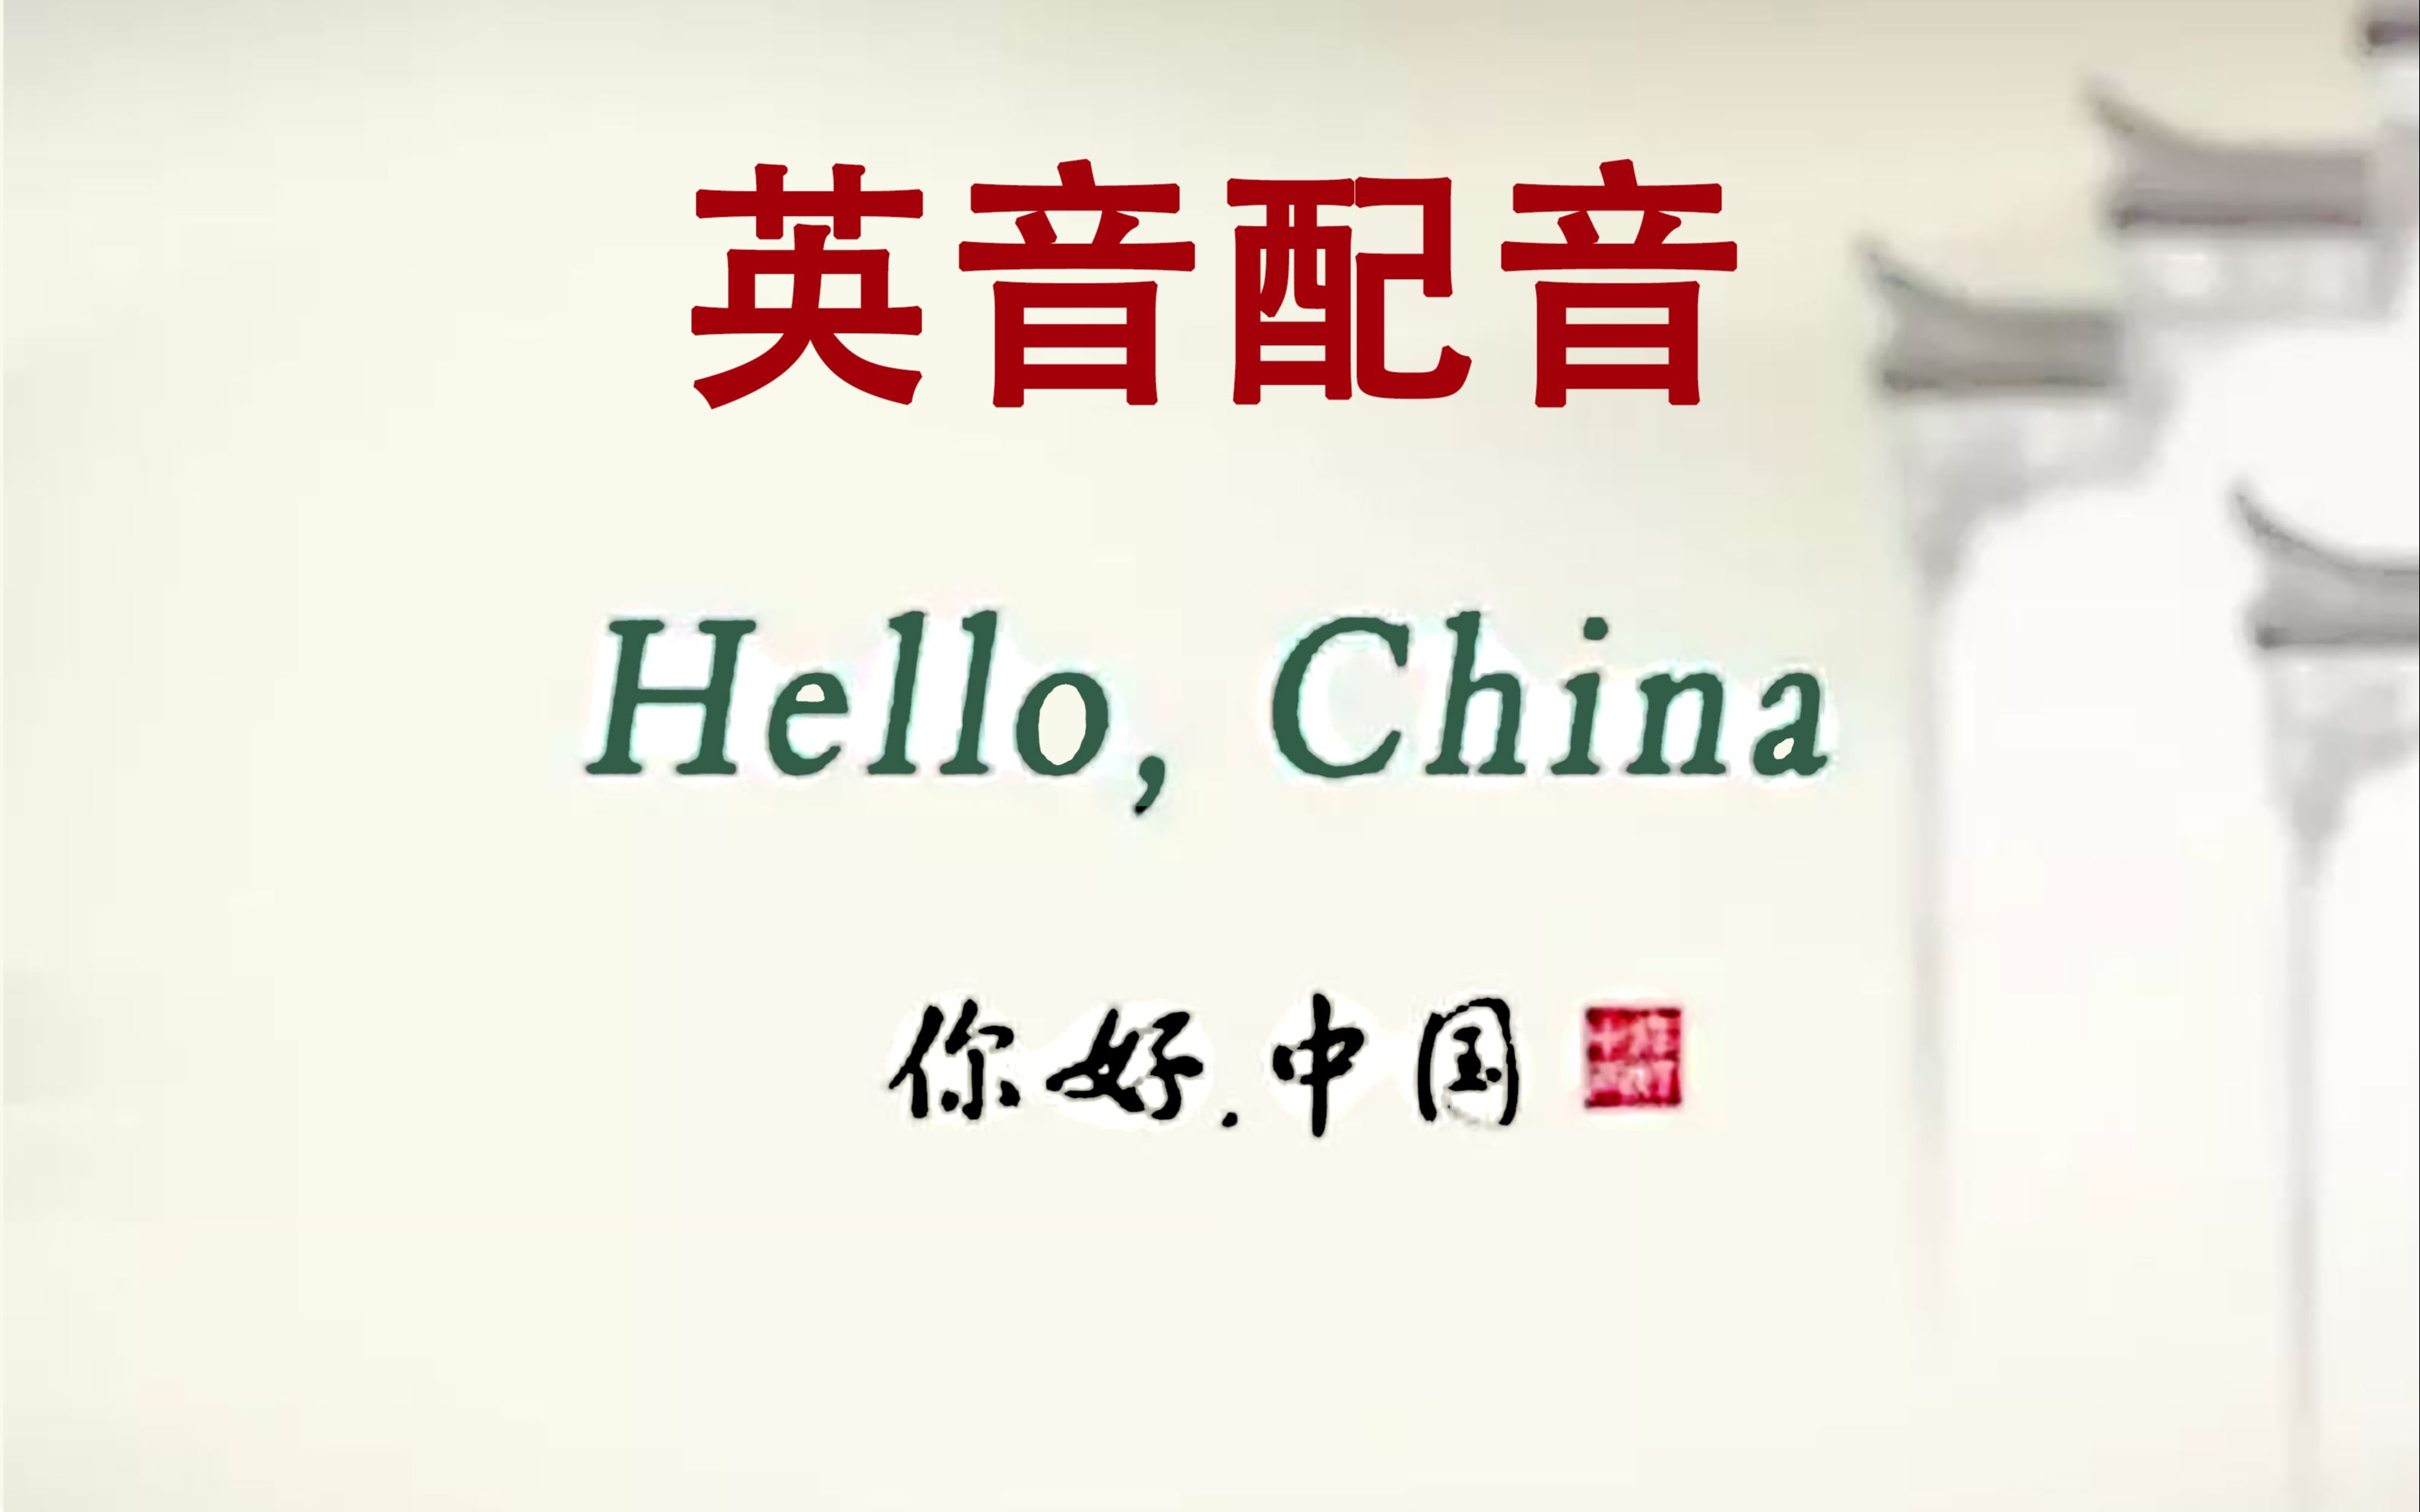 [图]【数字】Hello China《你好中国》英音配音